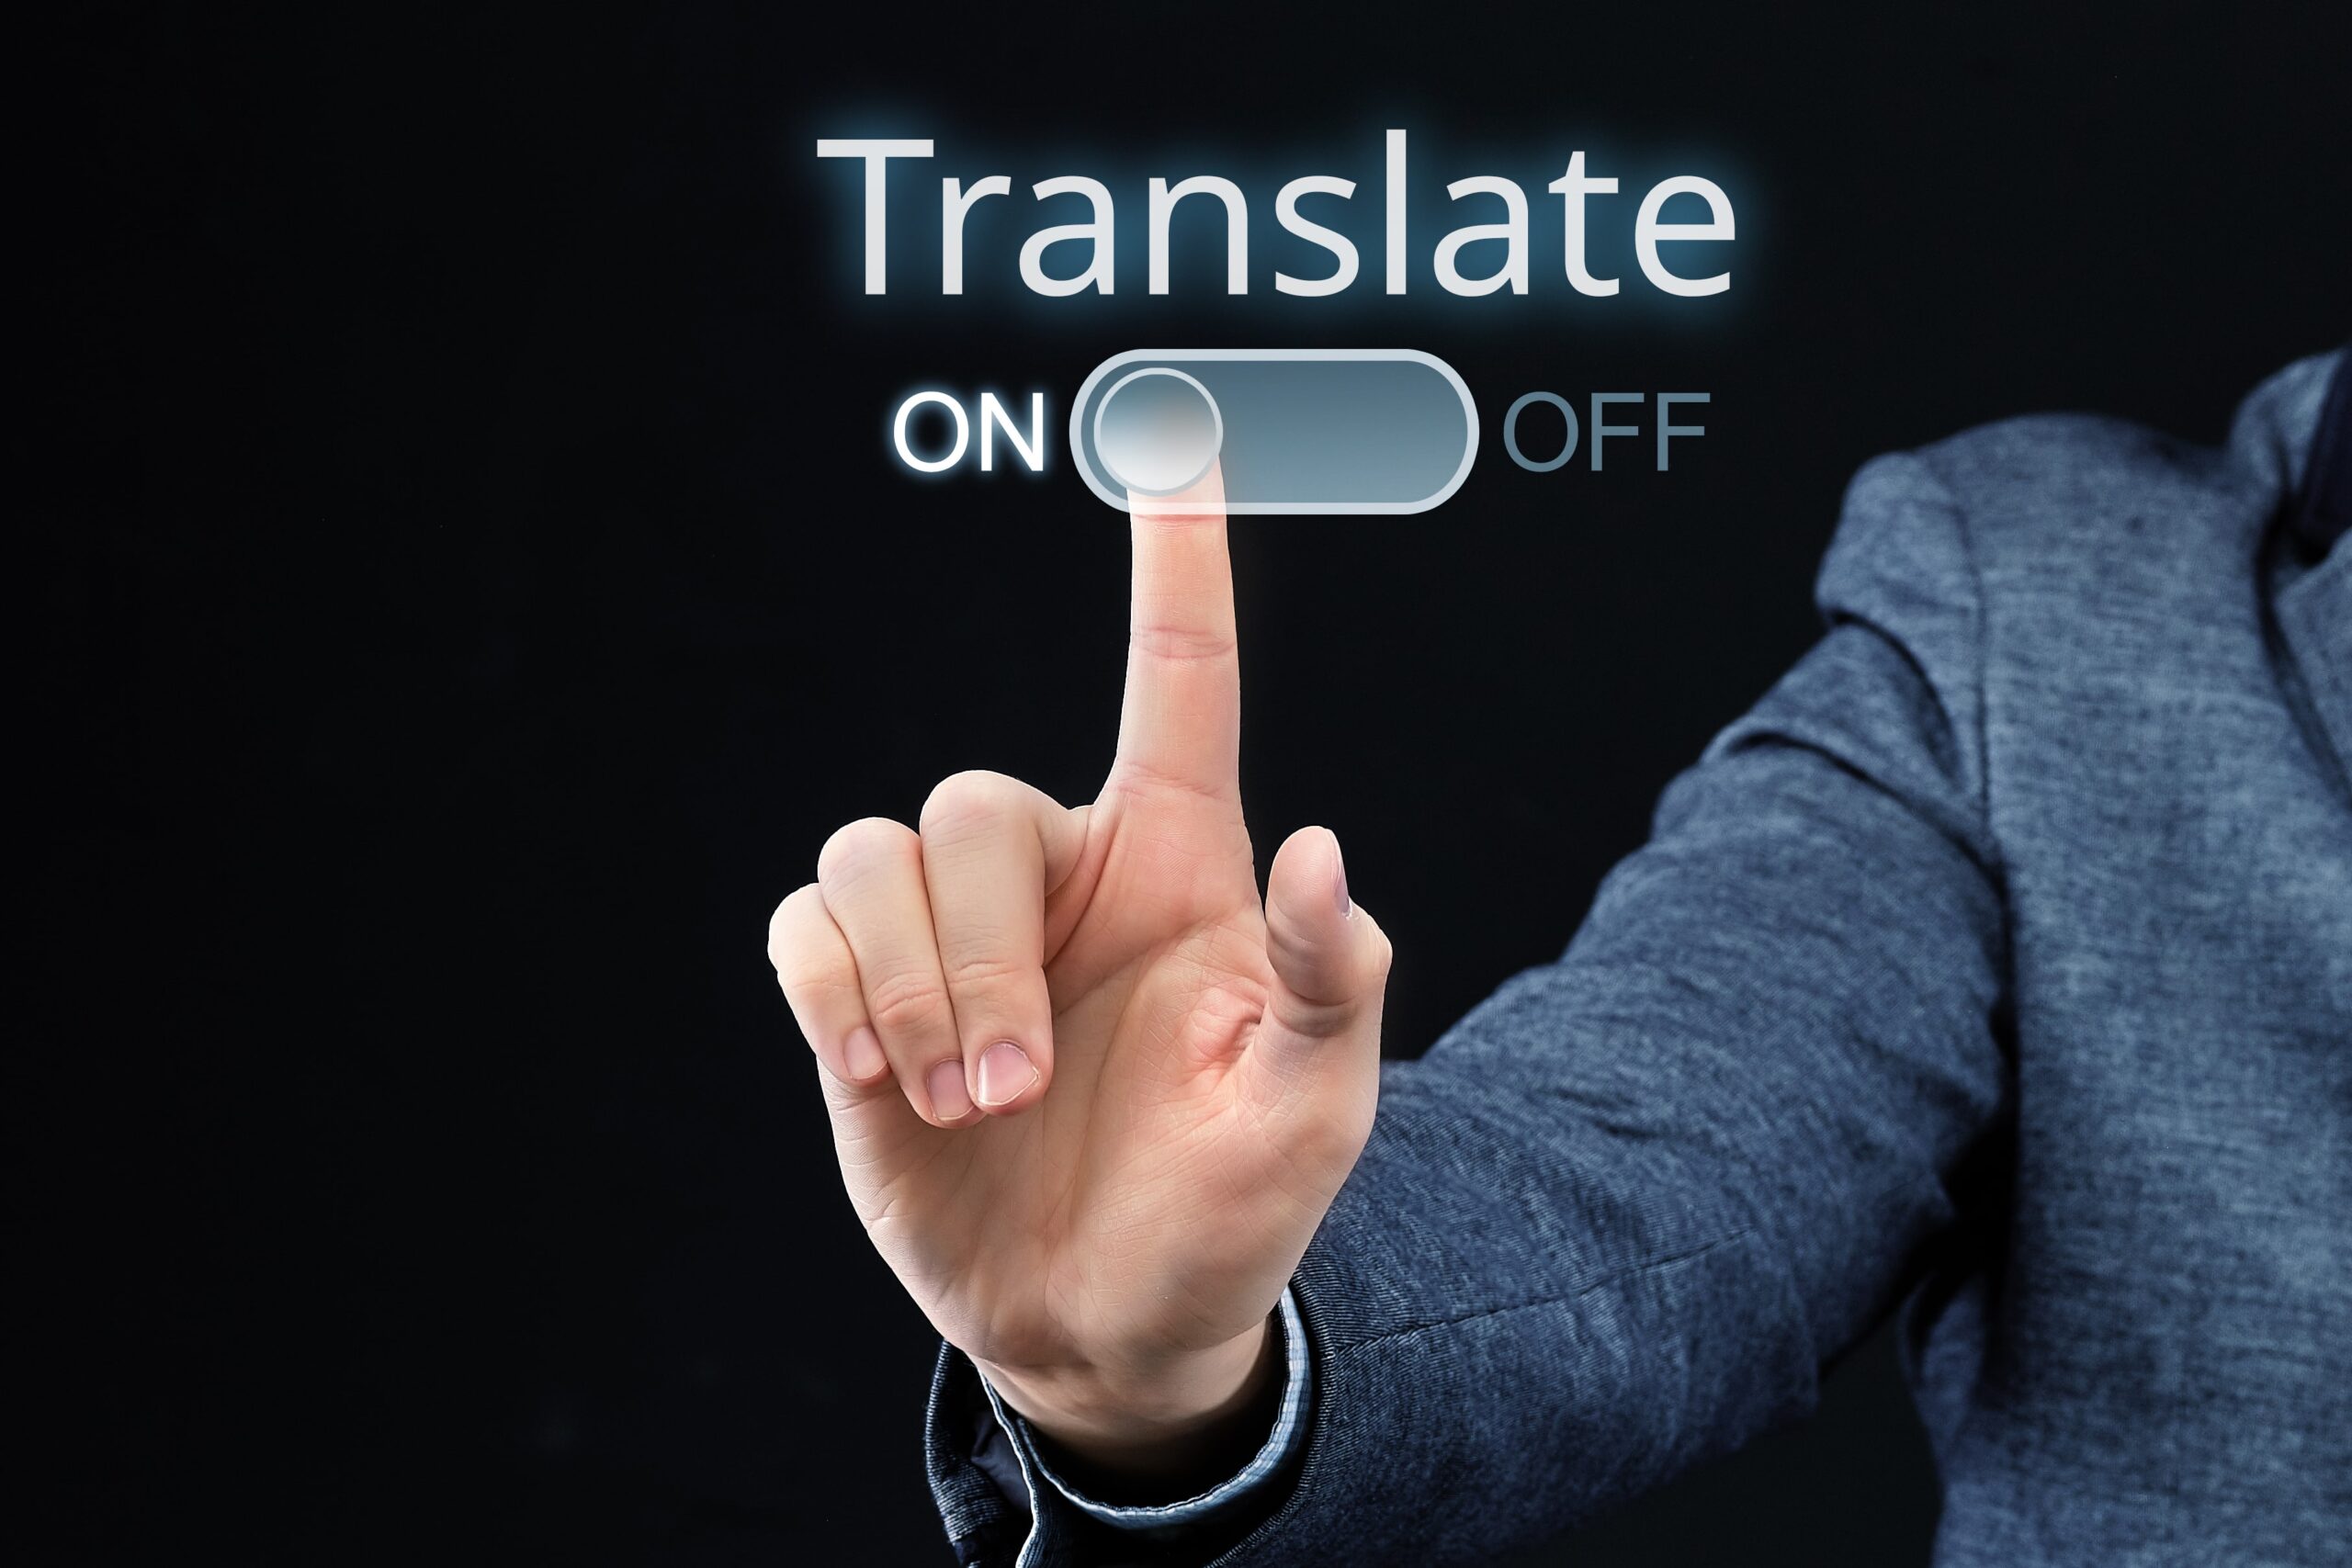 Tradutor profissional e tradutor amador: como diferenciar?